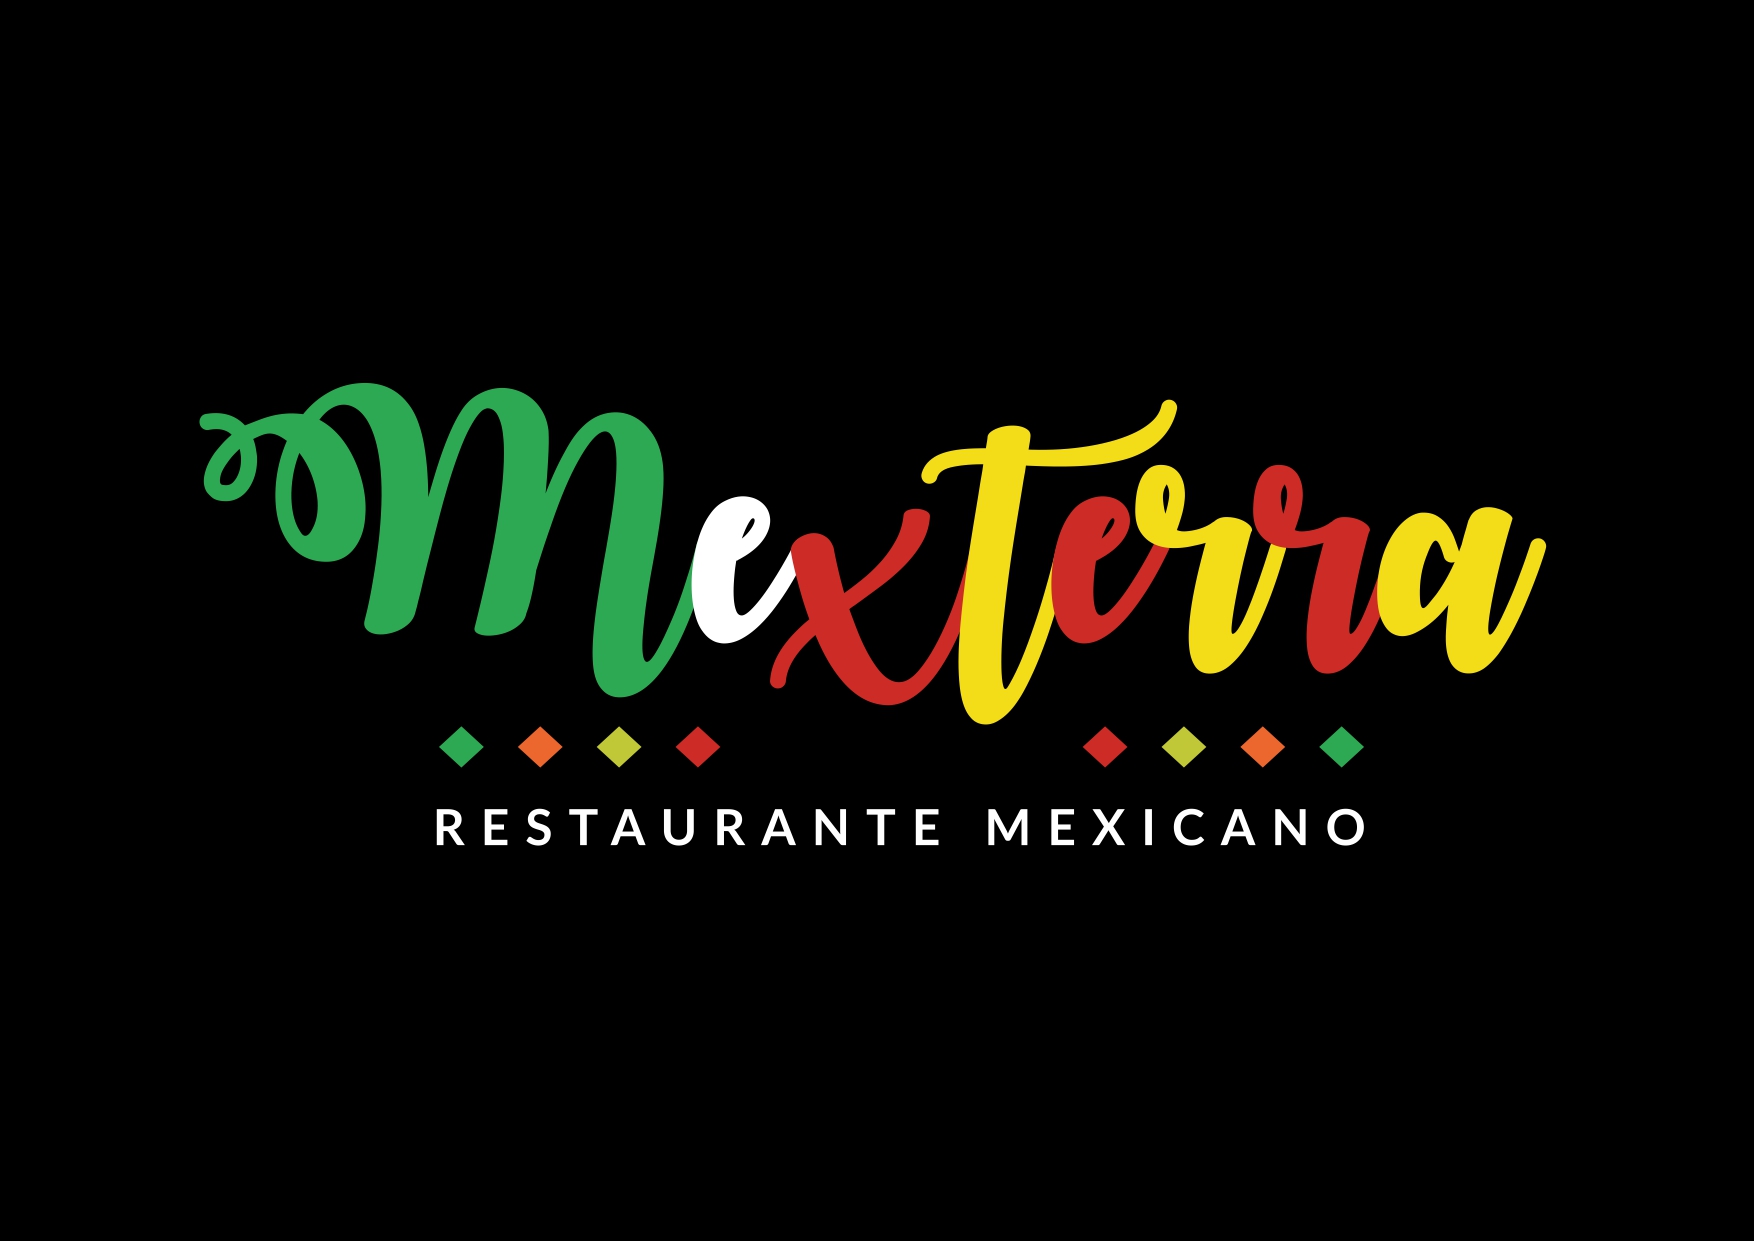 Mexterra Restaurante Mexicano